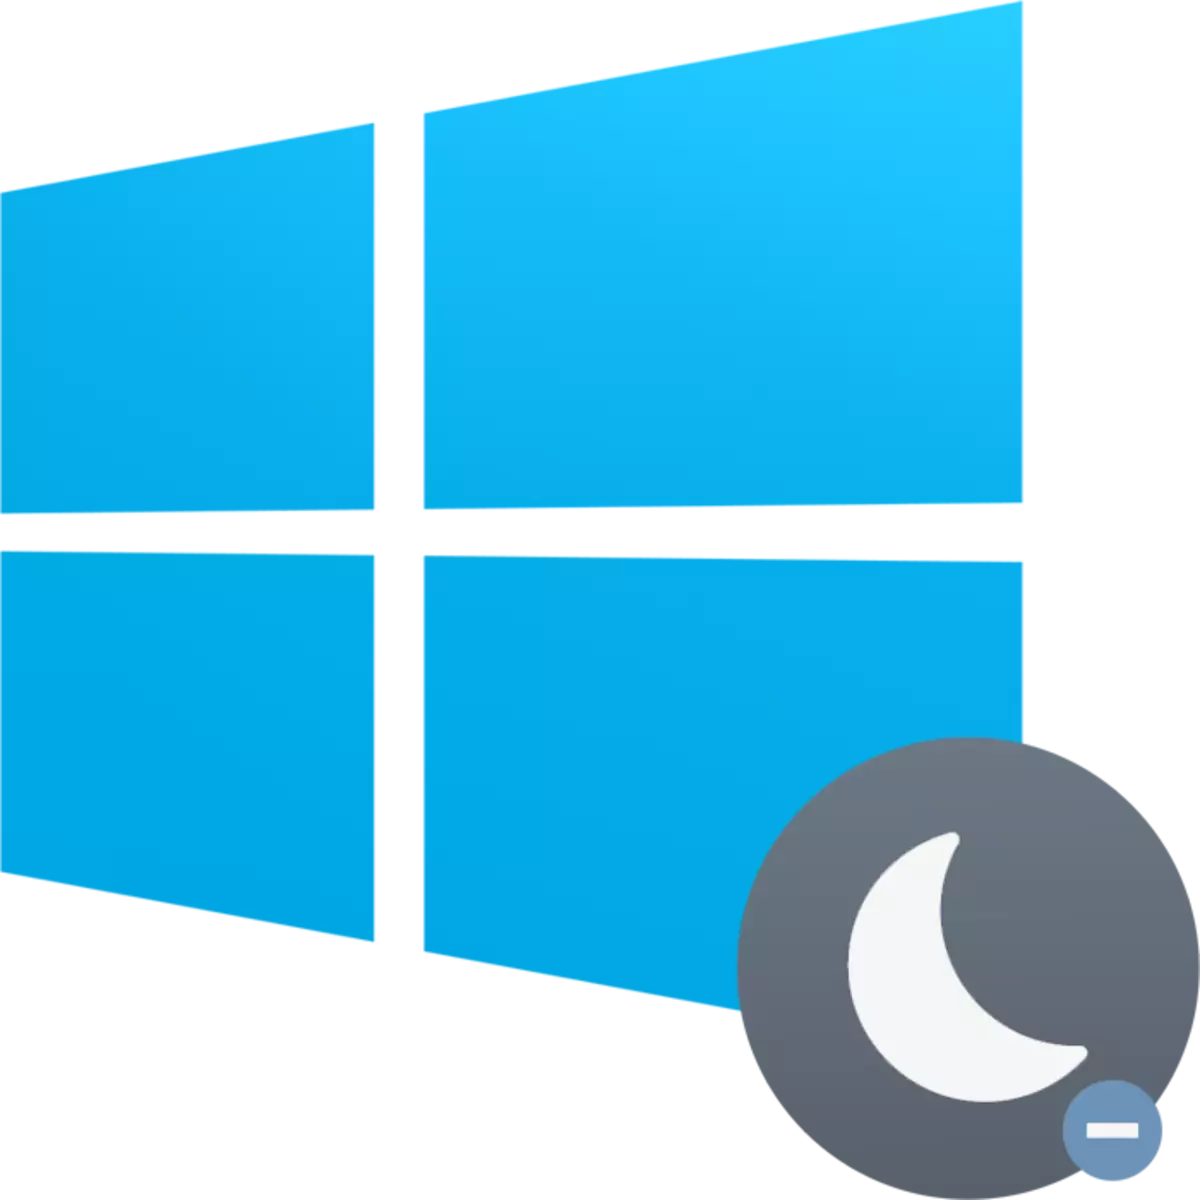 Kif tiddiżattiva l-ibernazzjoni fil-Windows 10